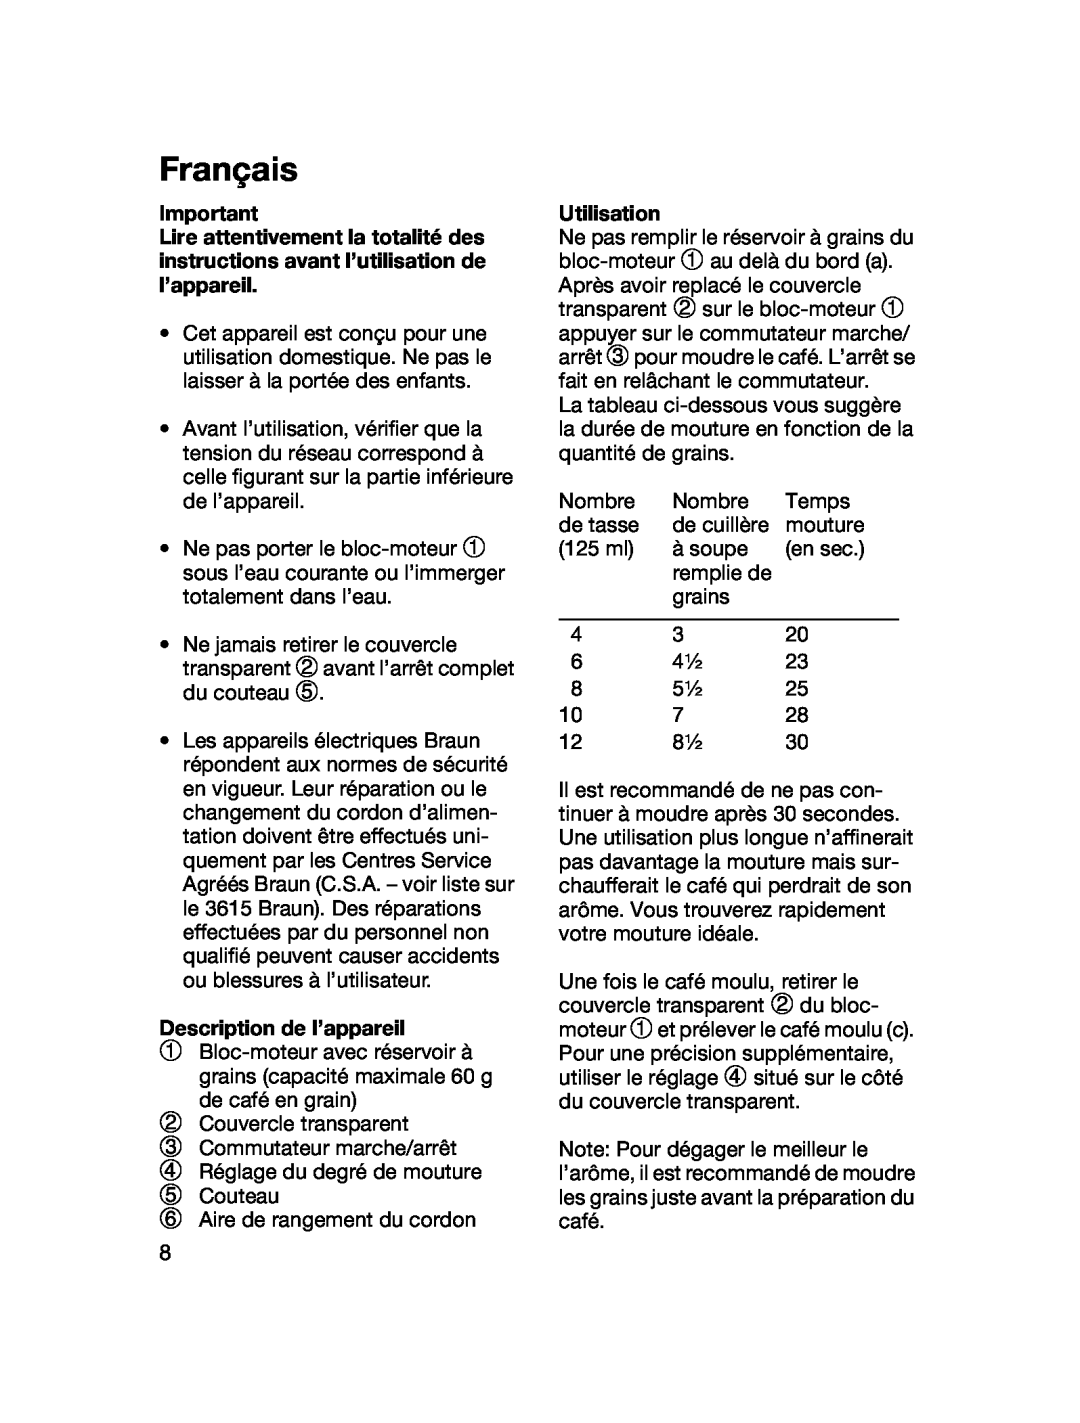 Braun 4041 manual Français, Description de l’appareil, Utilisation 